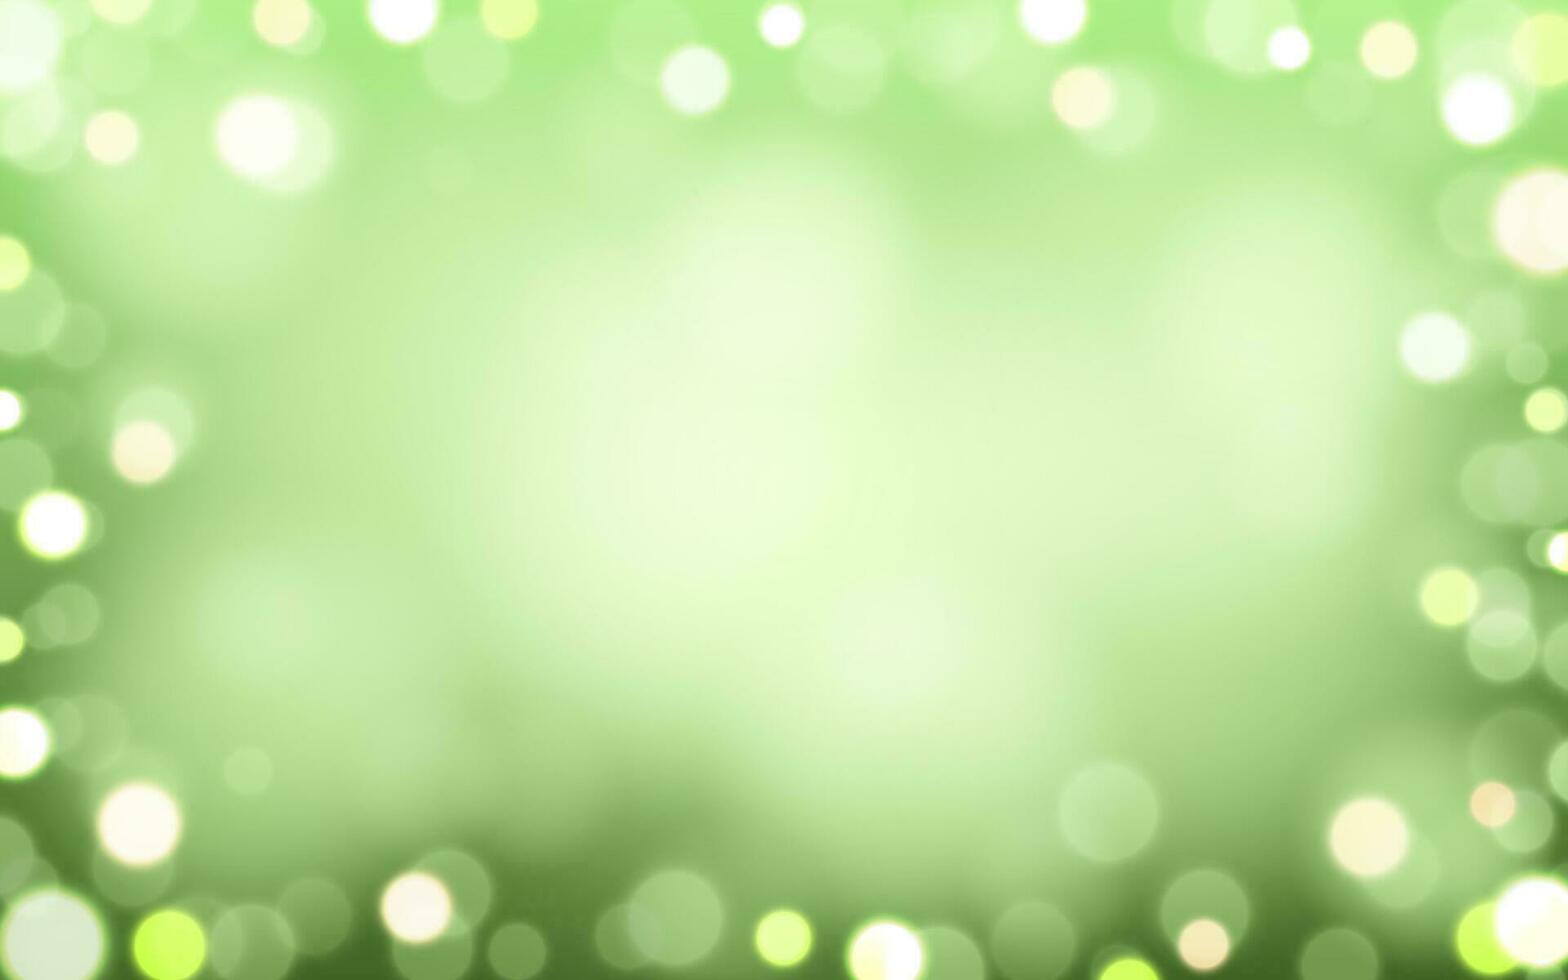 natuur groen bokeh zacht licht abstract achtergrond, vector eps 10 illustratie bokeh deeltjes, achtergrond decoratie